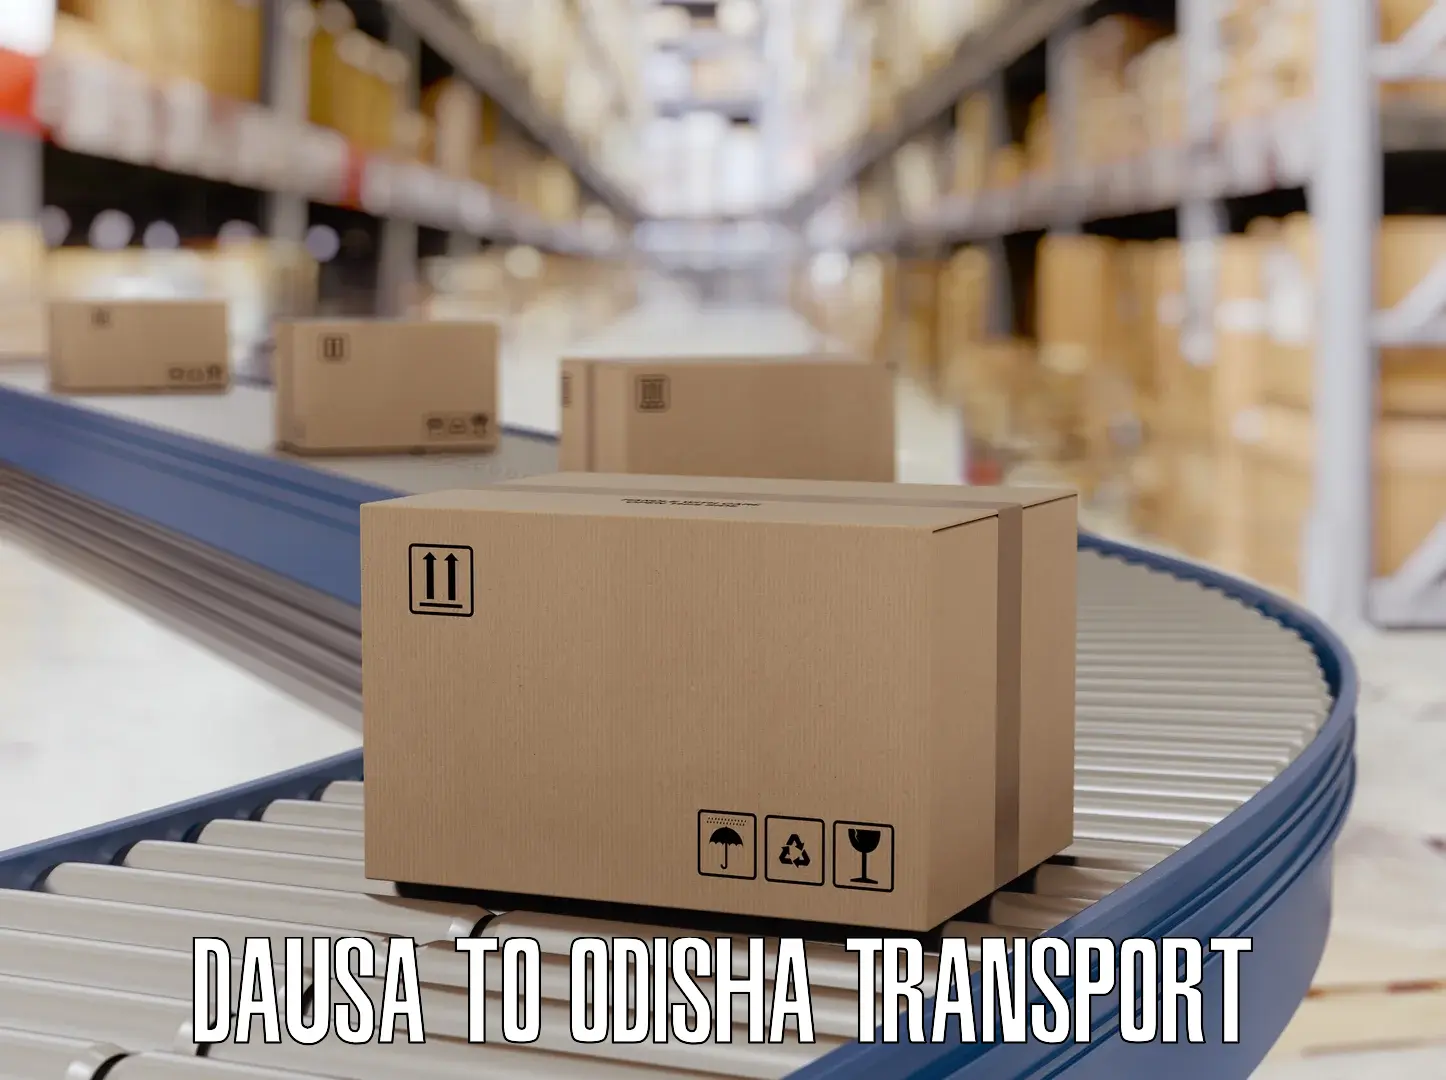 Container transport service in Dausa to Muniguda